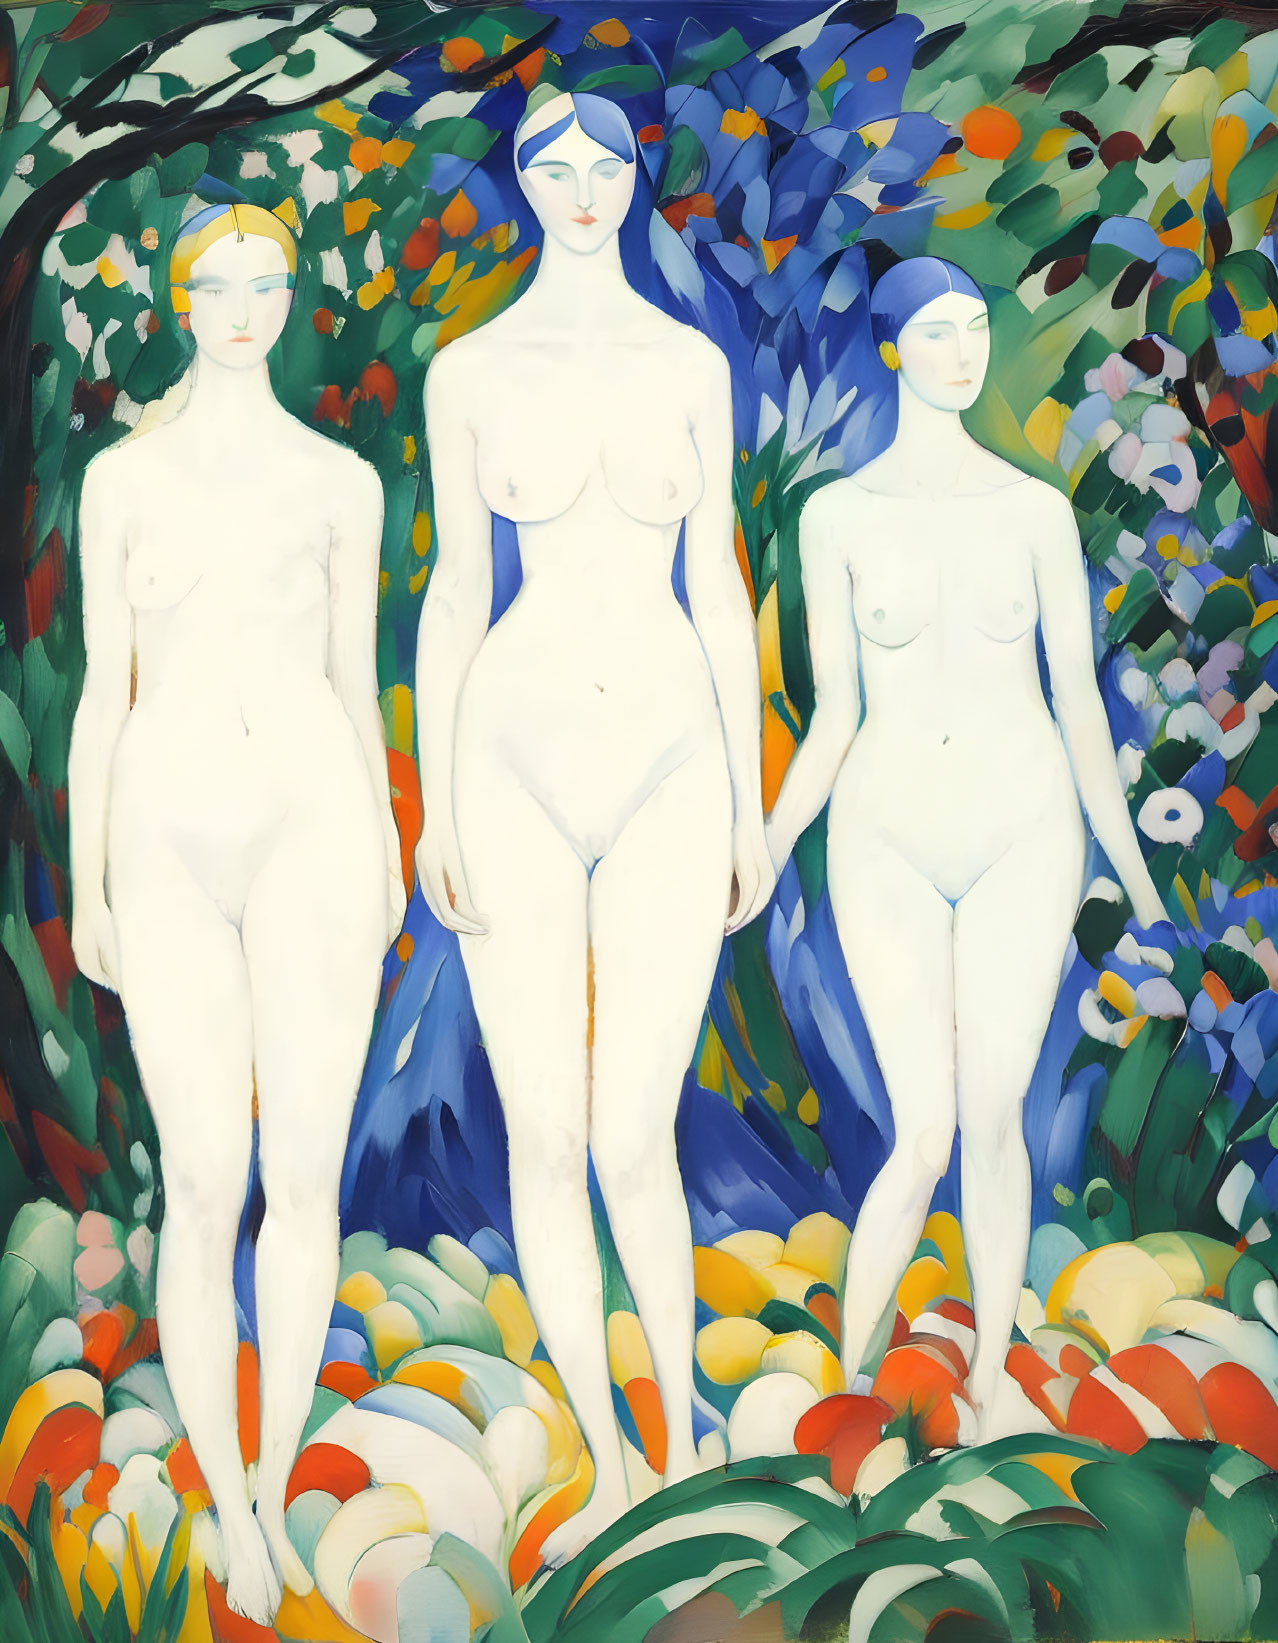 3 Bathers, Kazimir Malevich